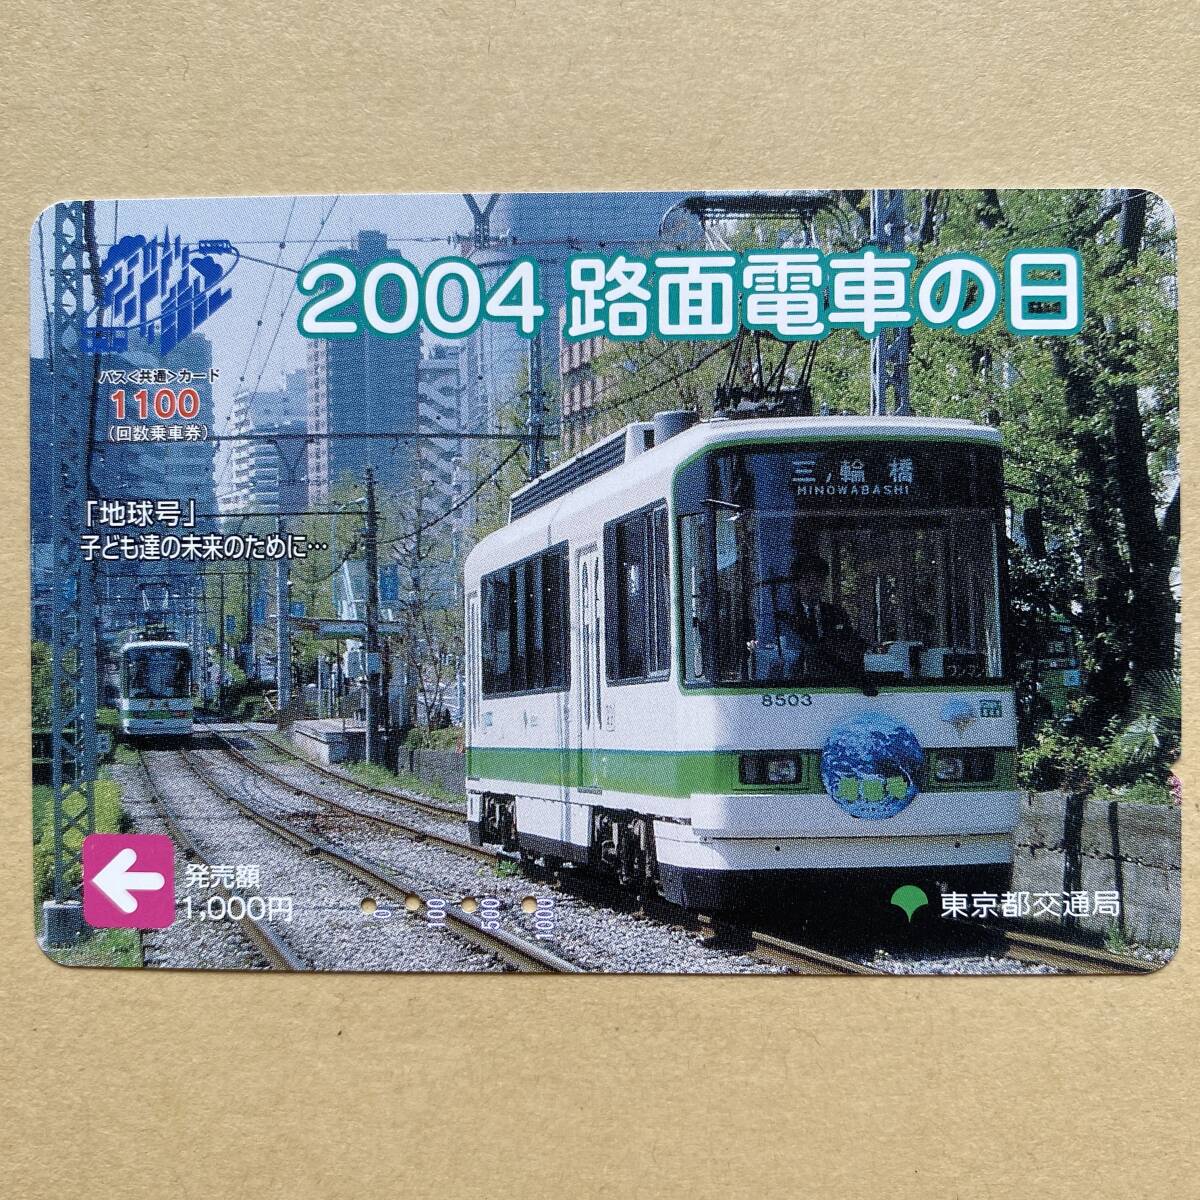 [ использованный ] bus card Tokyo Metropolitan area транспорт отдел 2004 трамвай. день 